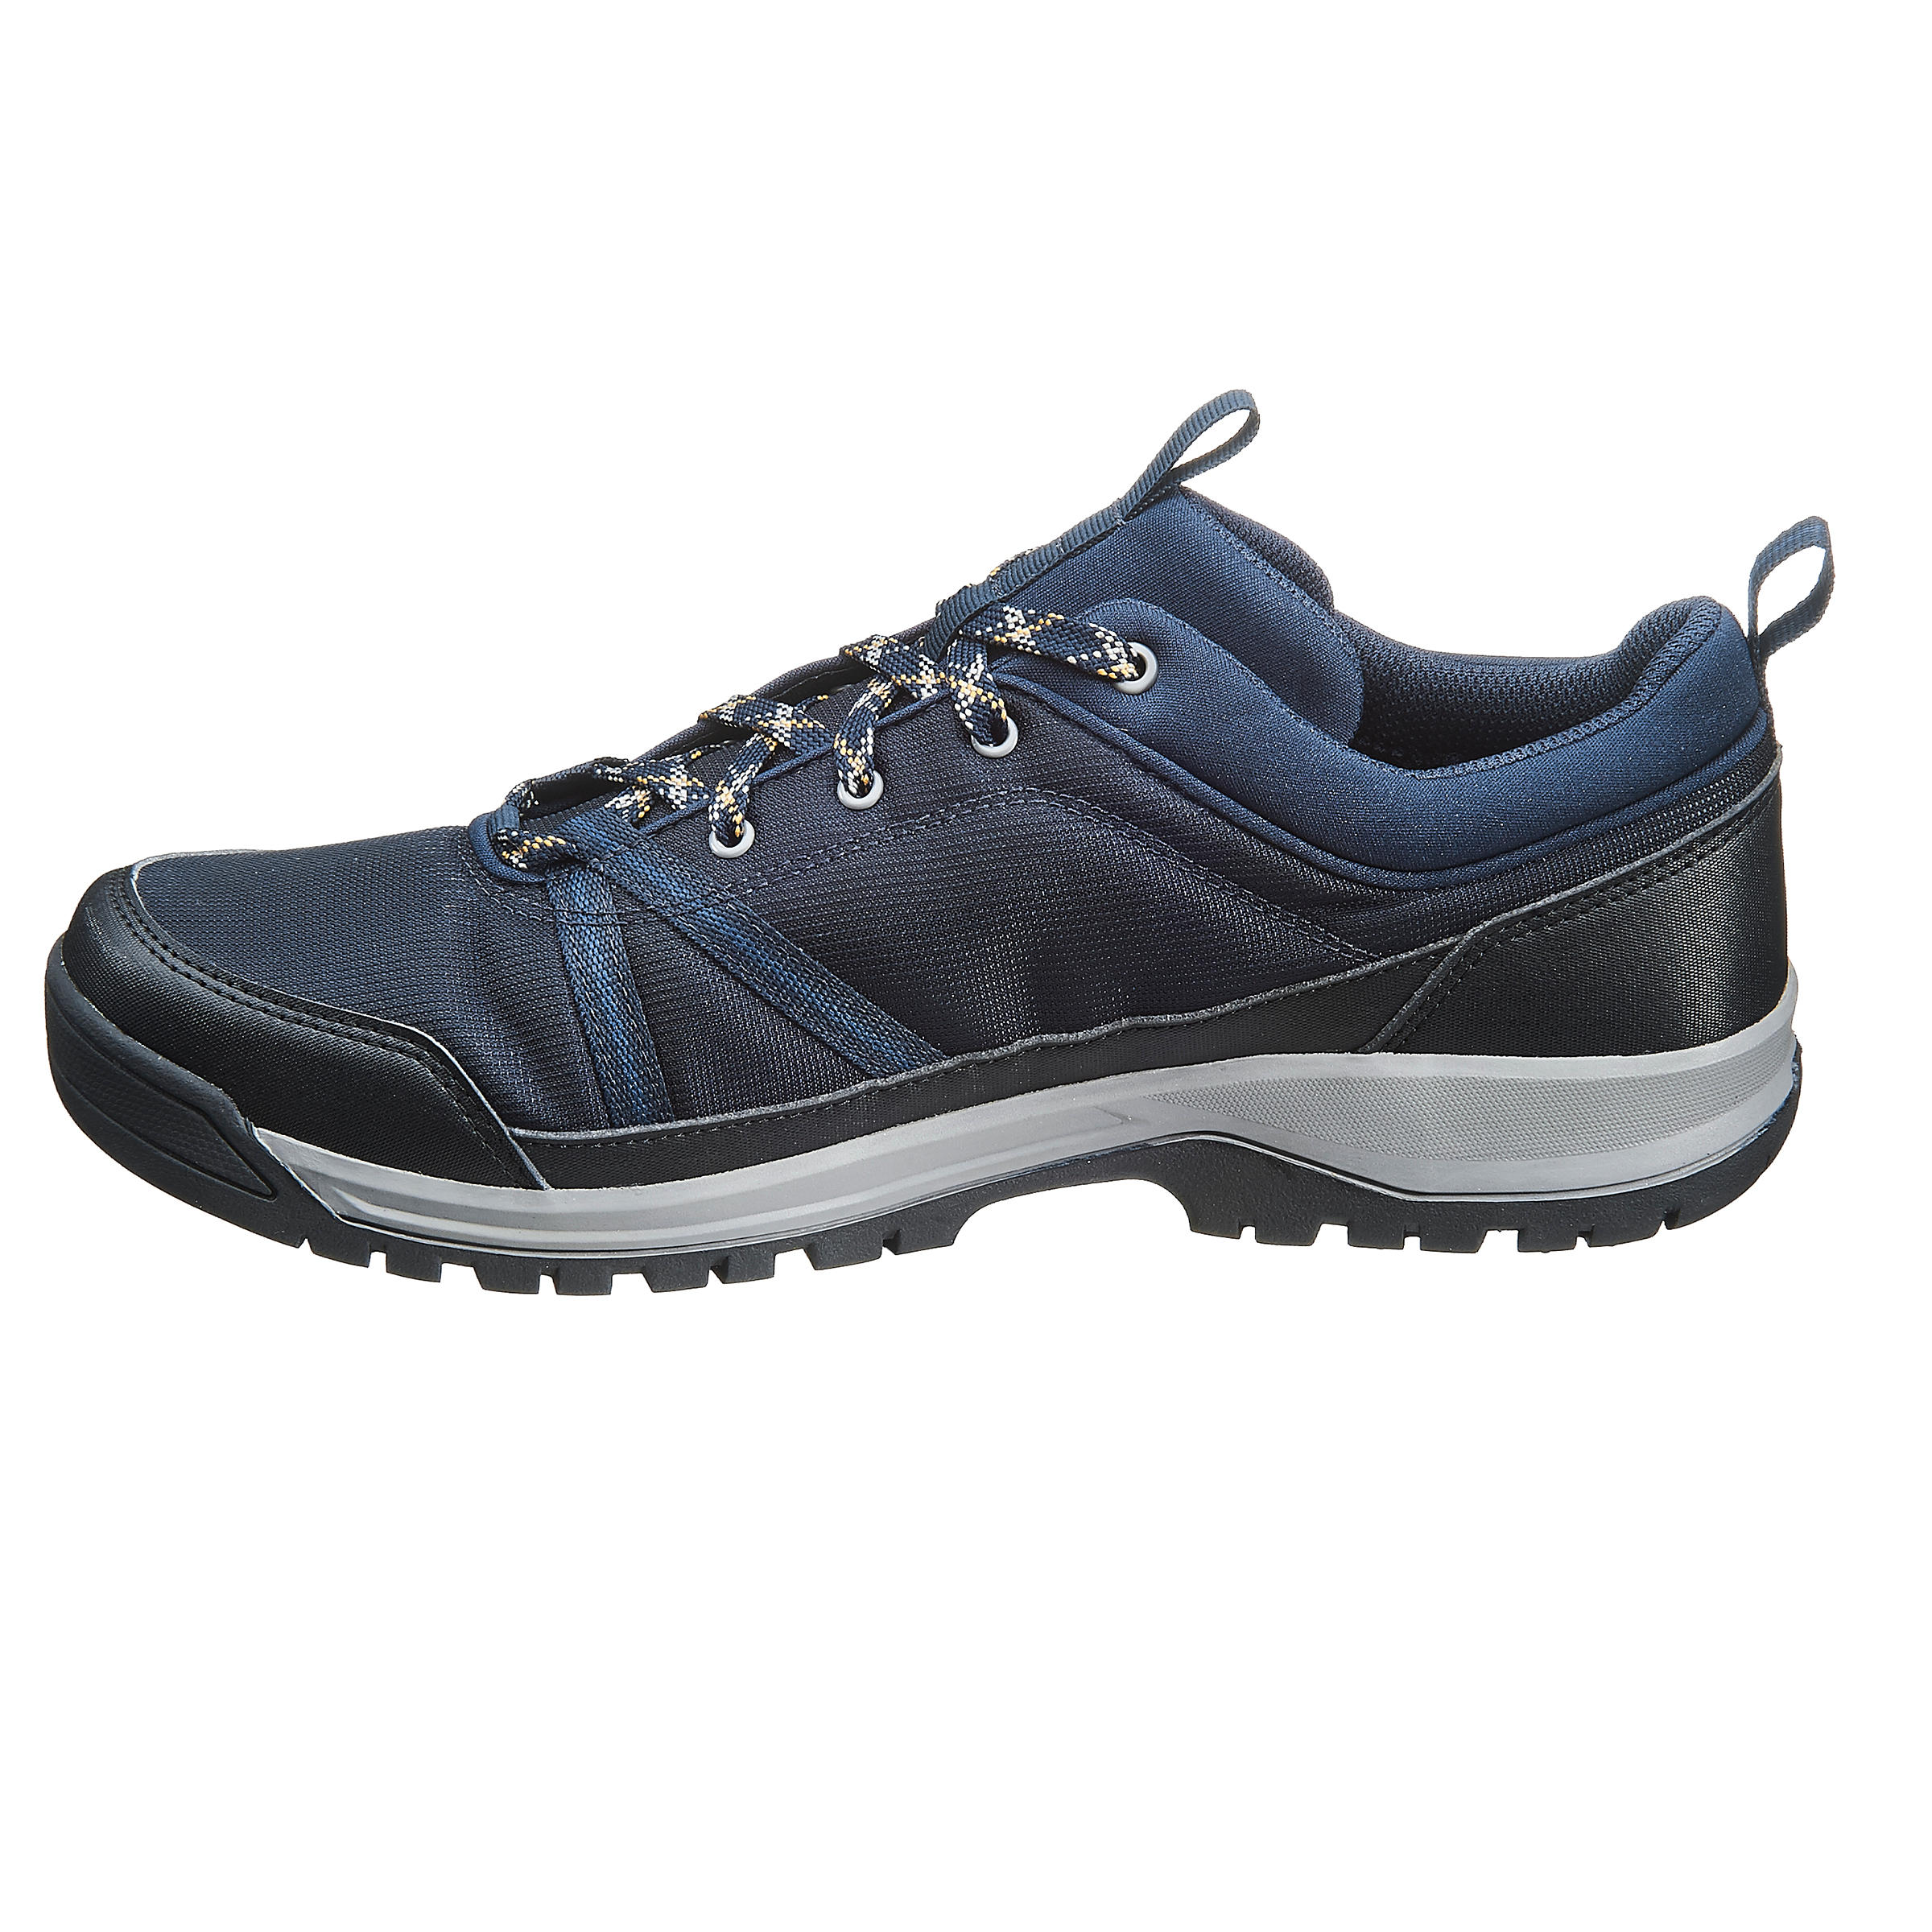 Chaussures de randonnée homme – NH 100 WP - QUECHUA